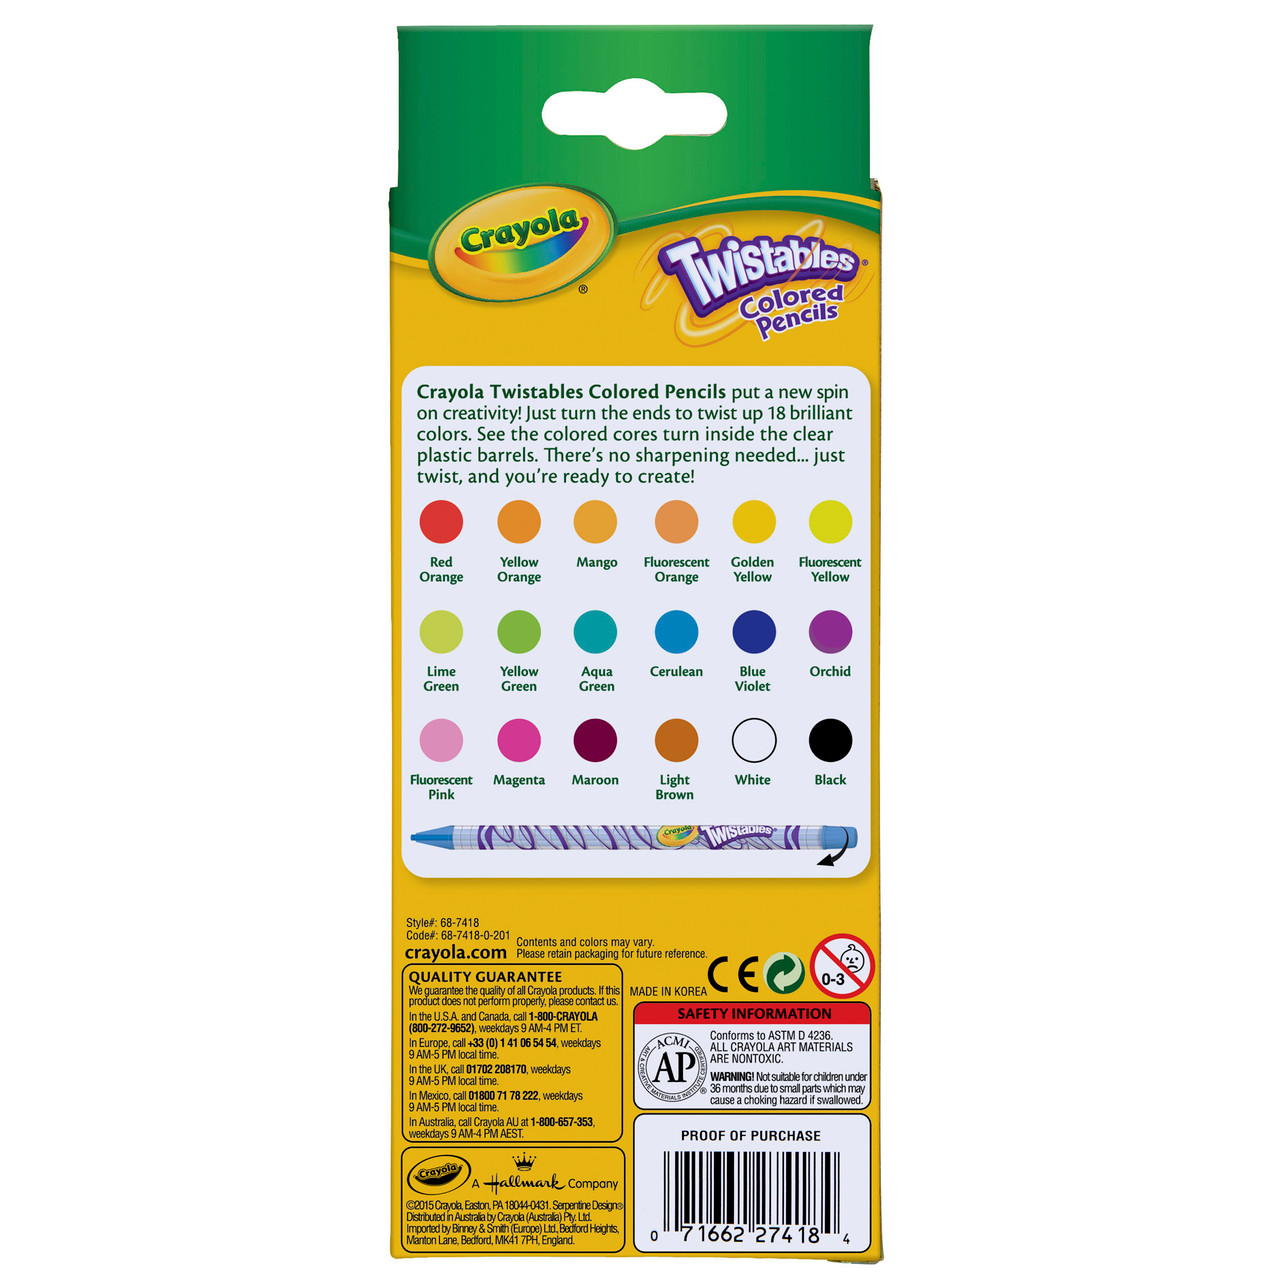 Crayola Twistables Colored Pencils, 12 Per Box, 6 Boxes